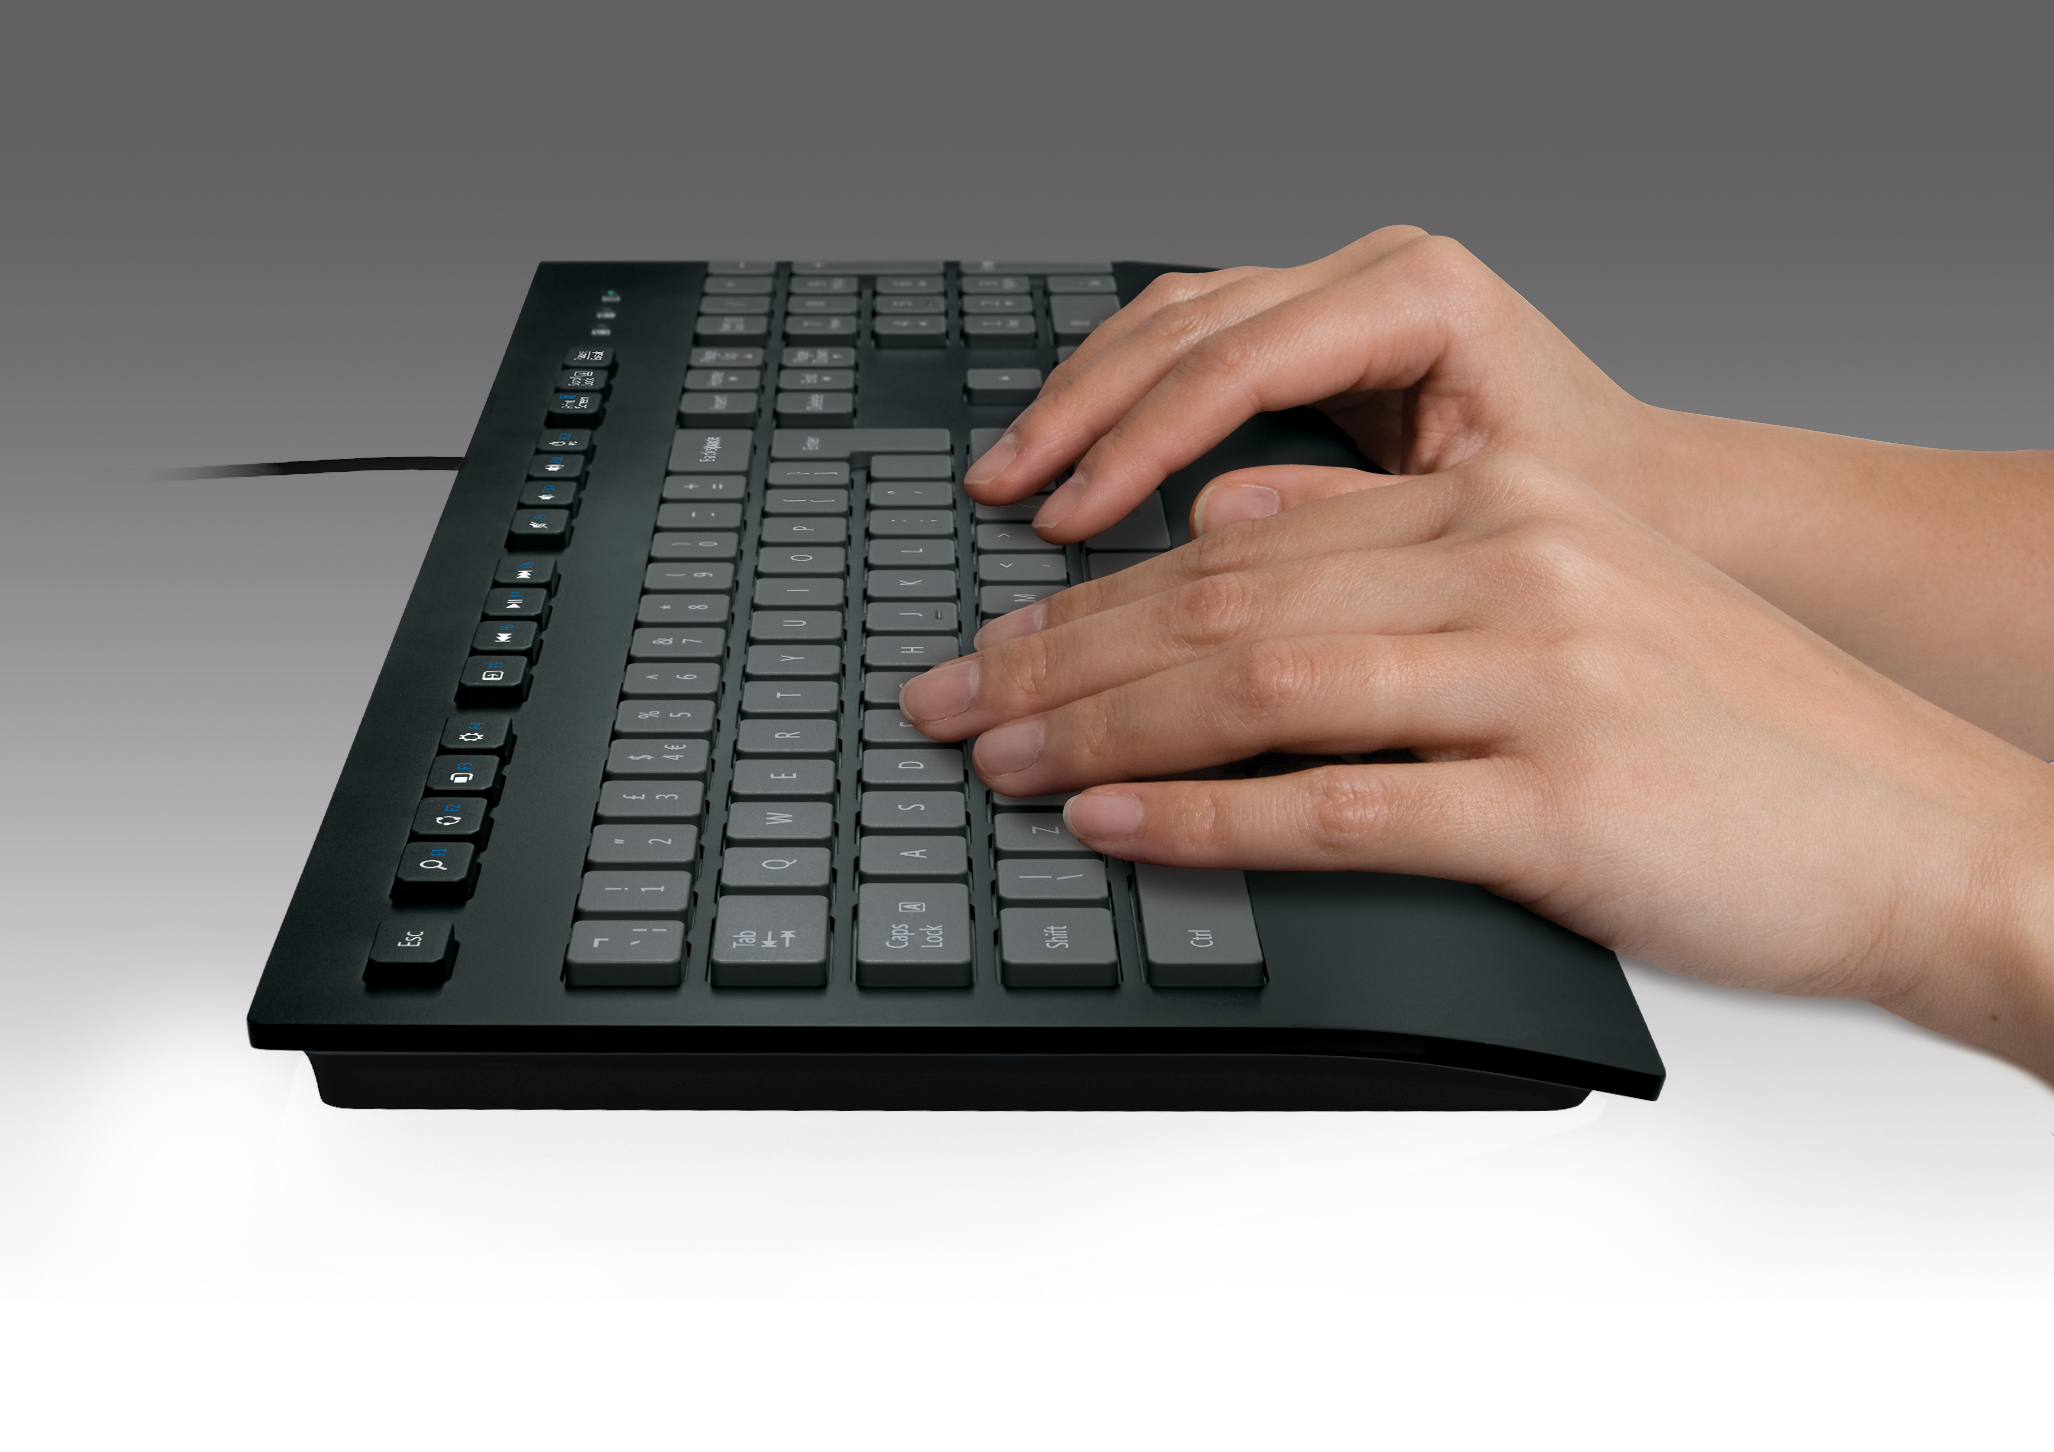 LOGITECH Keyboard K280e Corded Keyboard - Toetsenbord Wired